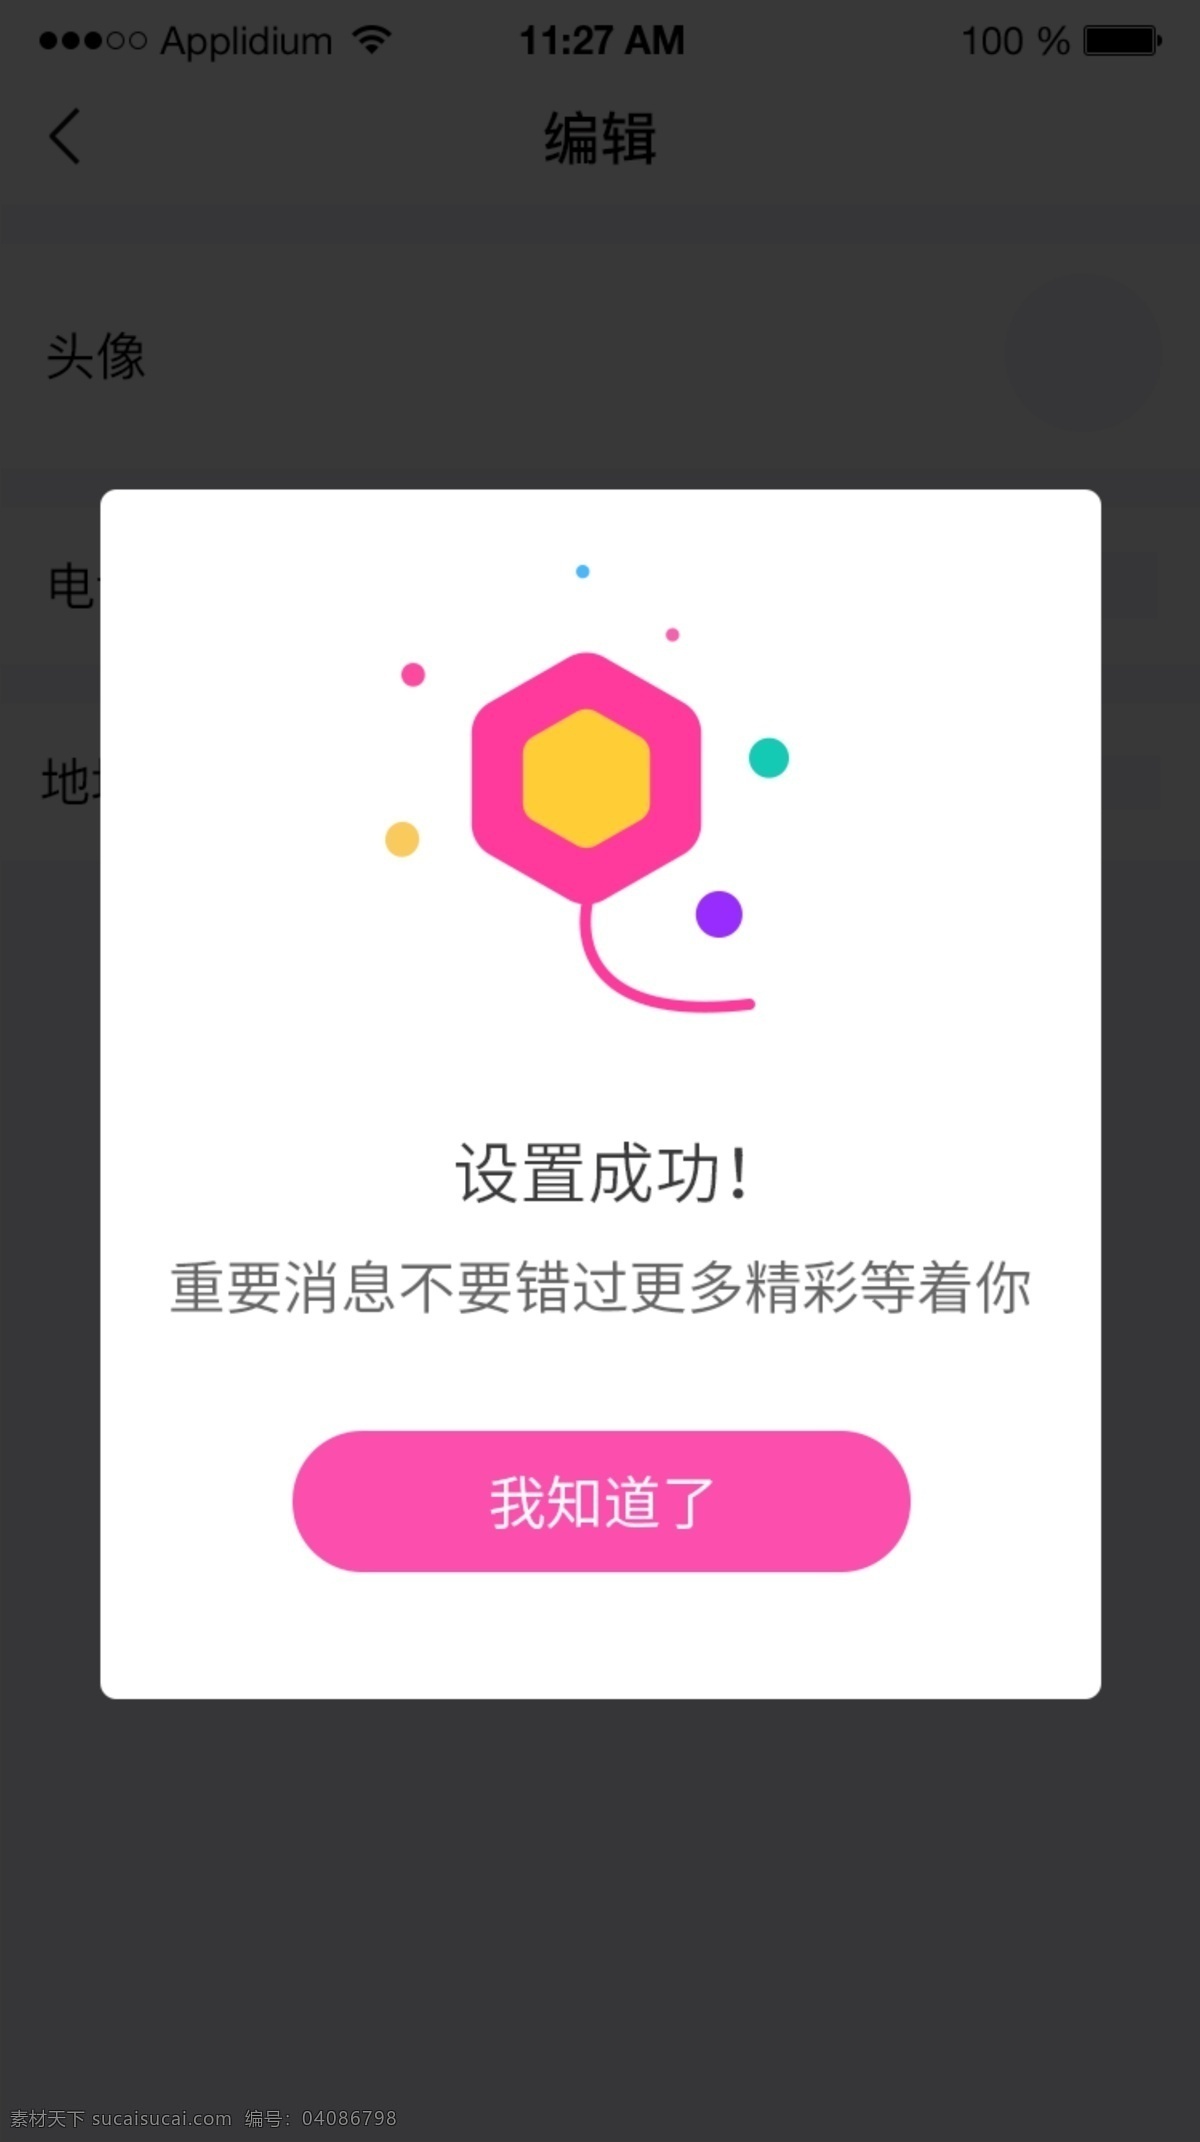 移动 端 app 设置 成功 粉色 弹 窗 弹窗 设置成功 网页ui 圆盘 图标设计